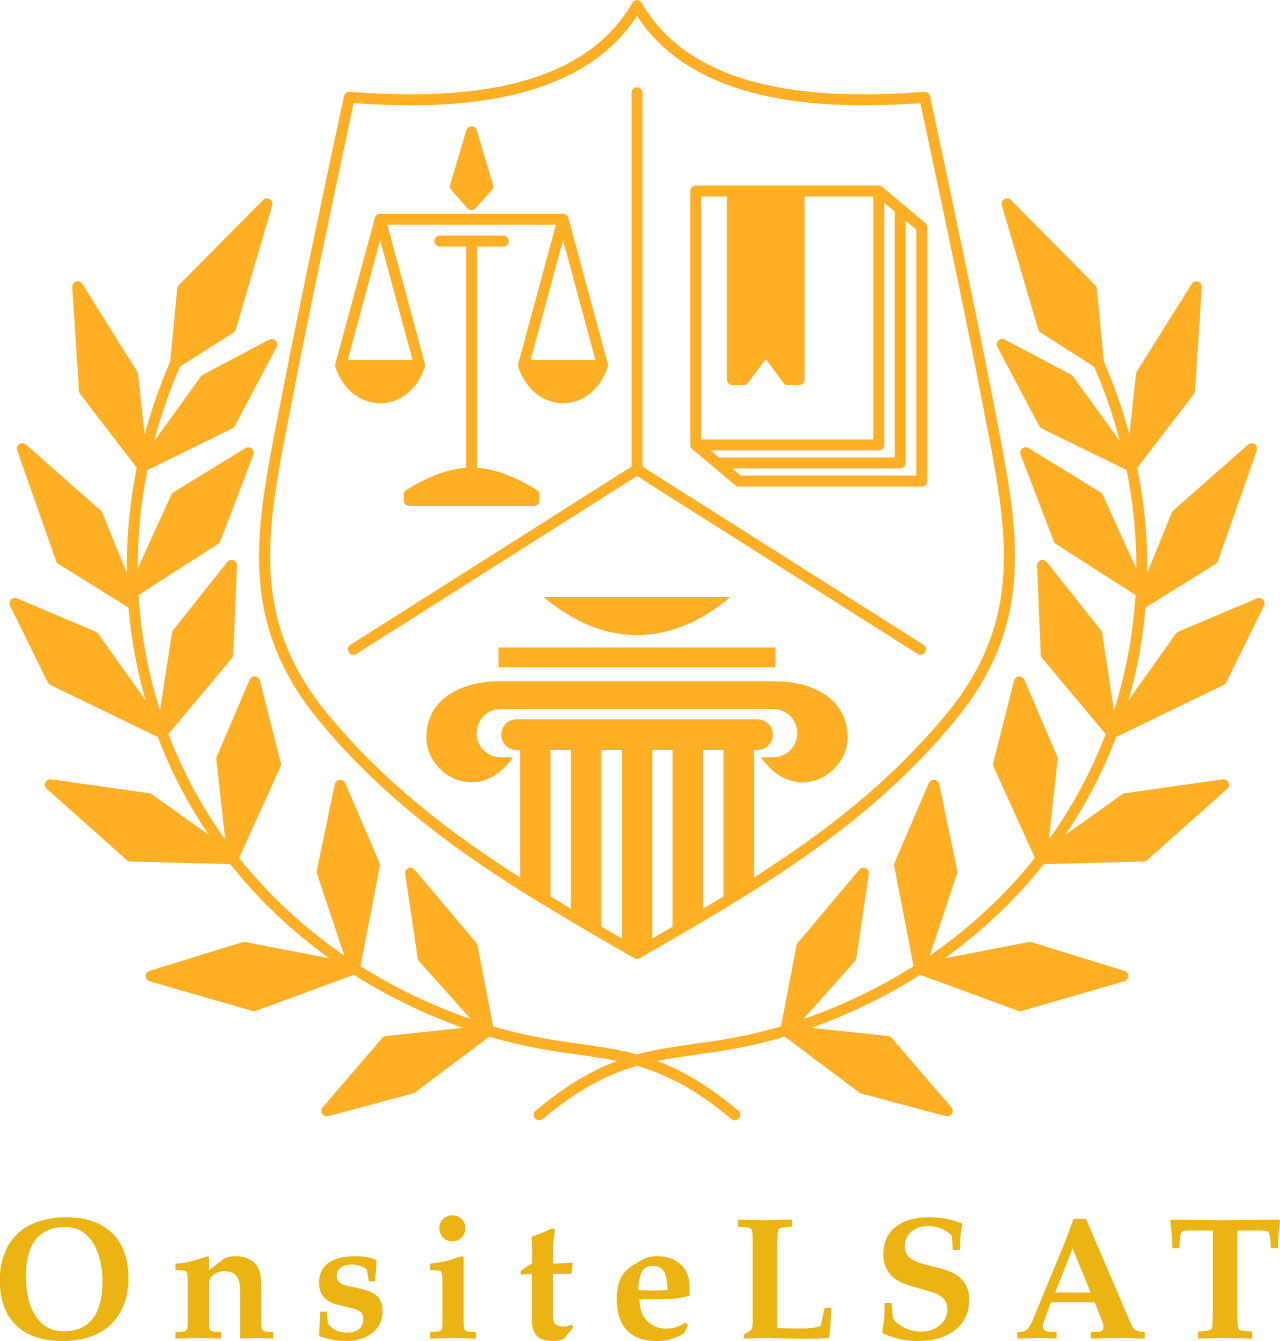 OnsiteLSAT's logo